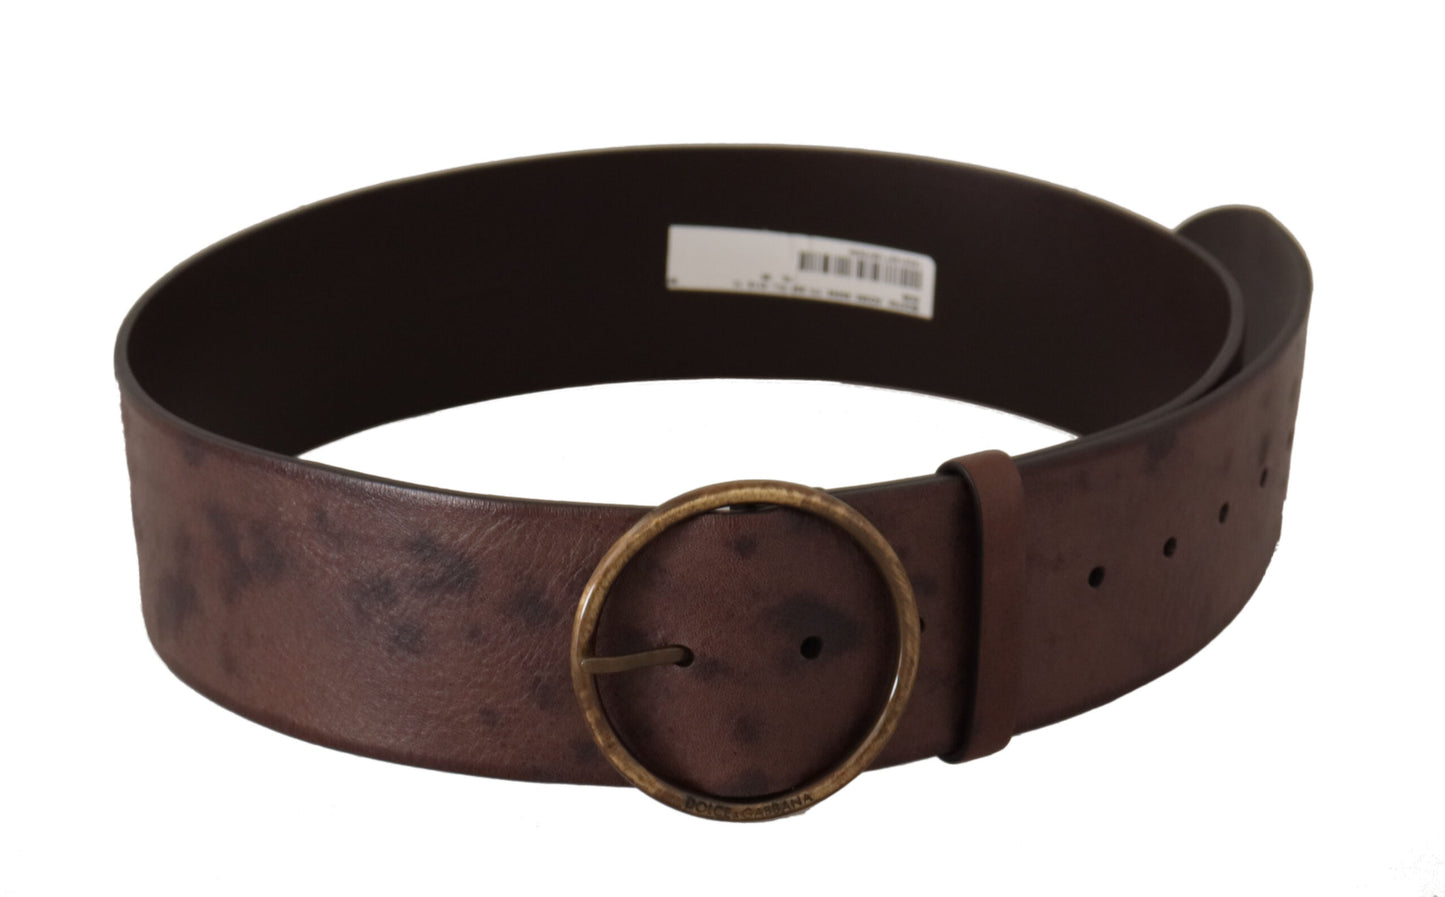 Dolce &amp; Gabbana Dark Brown Wide Calf Leather Logo Round Buckle Belt